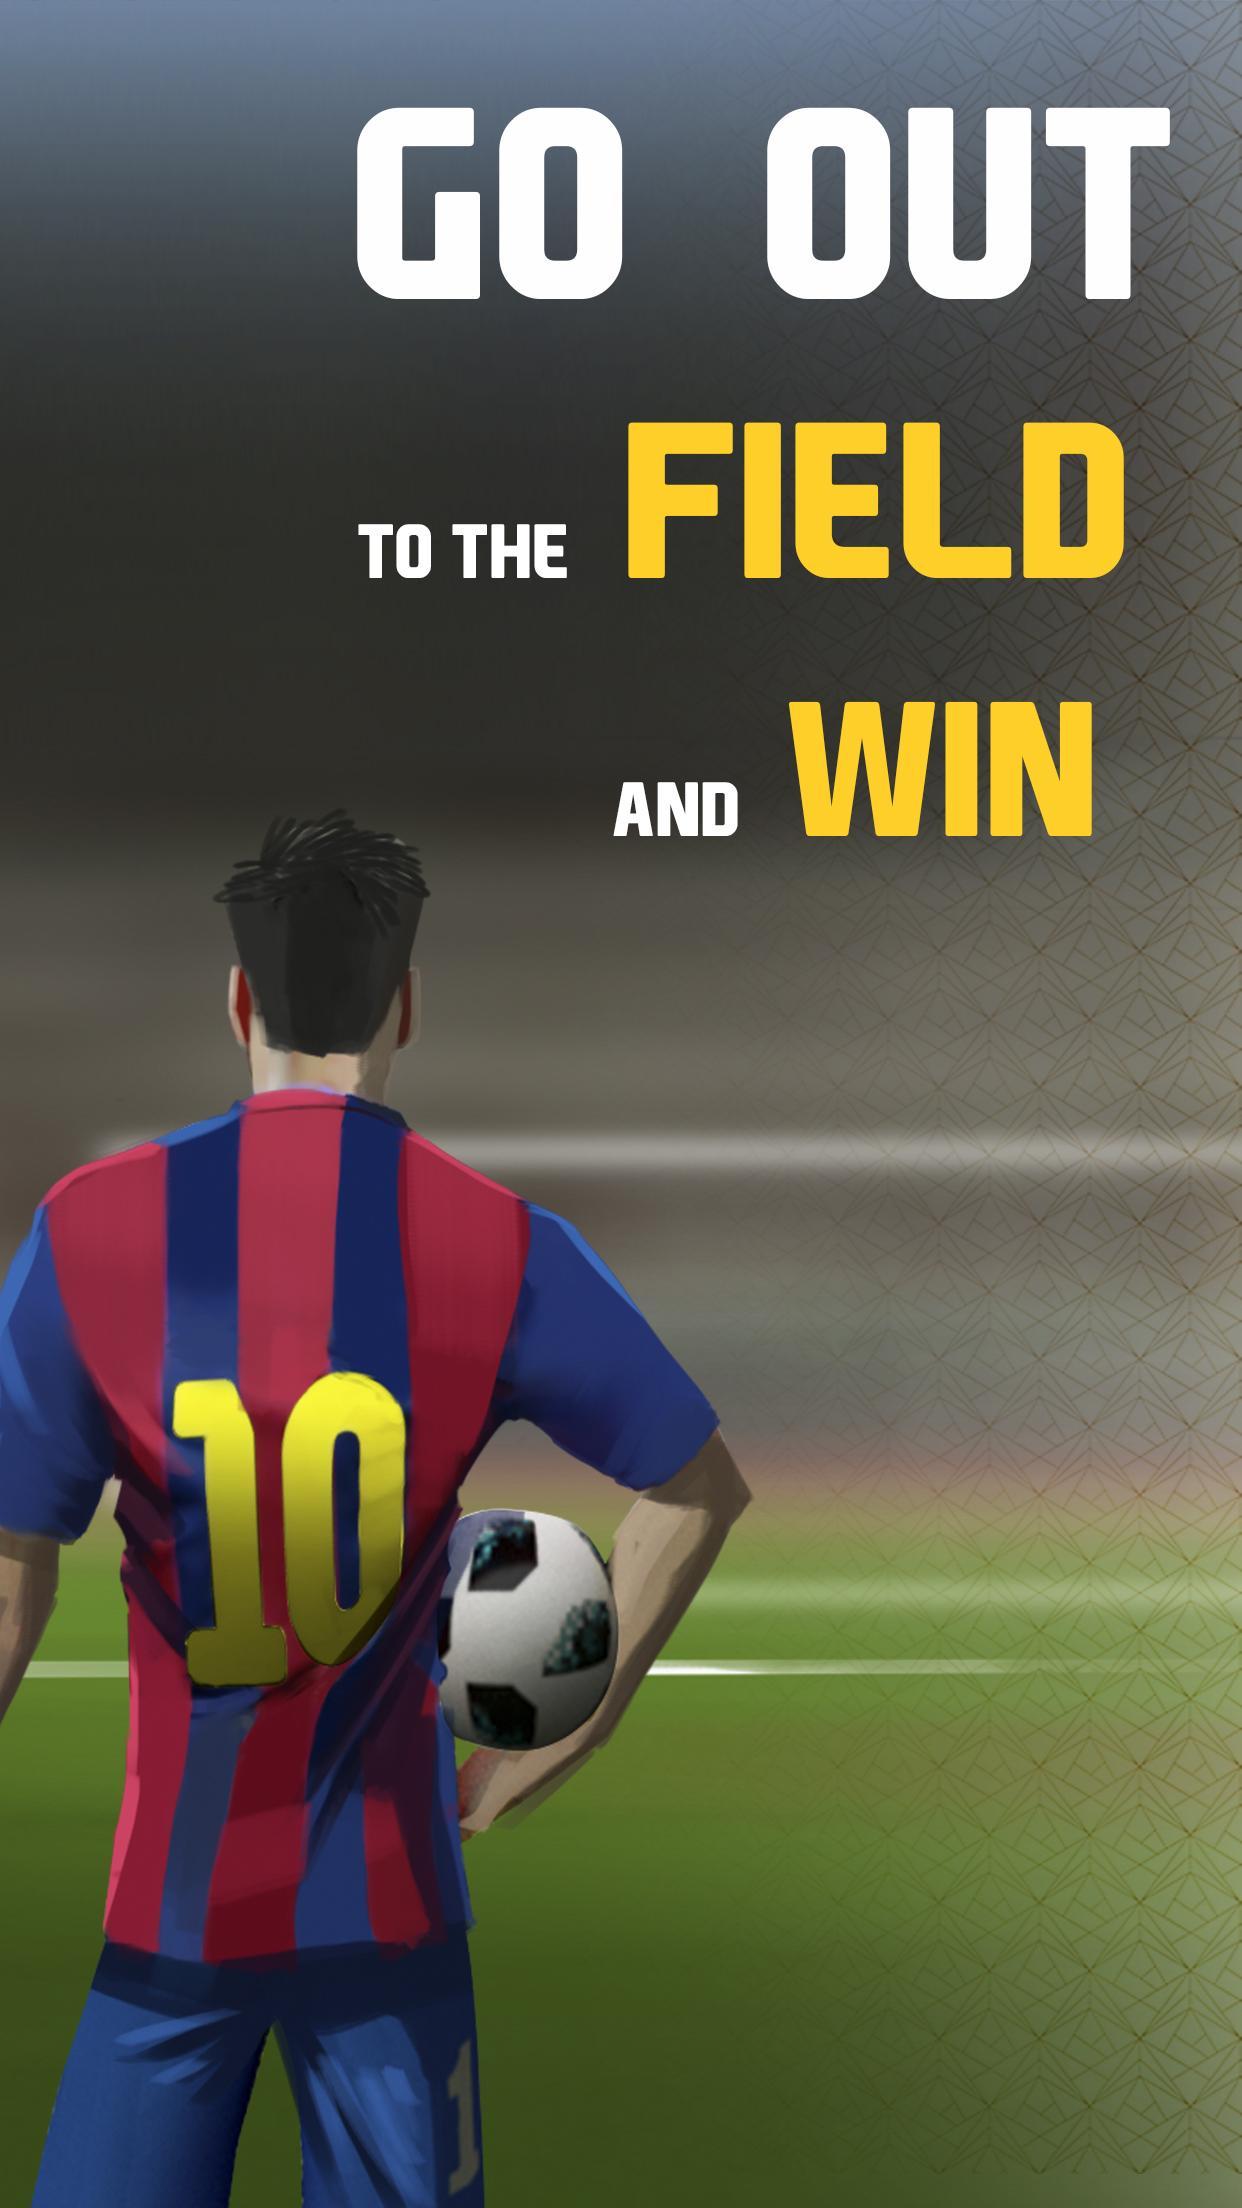 الركلات الحرة لعبة 3D كرة القدم - ركلات الترجيح for Android - APK Download